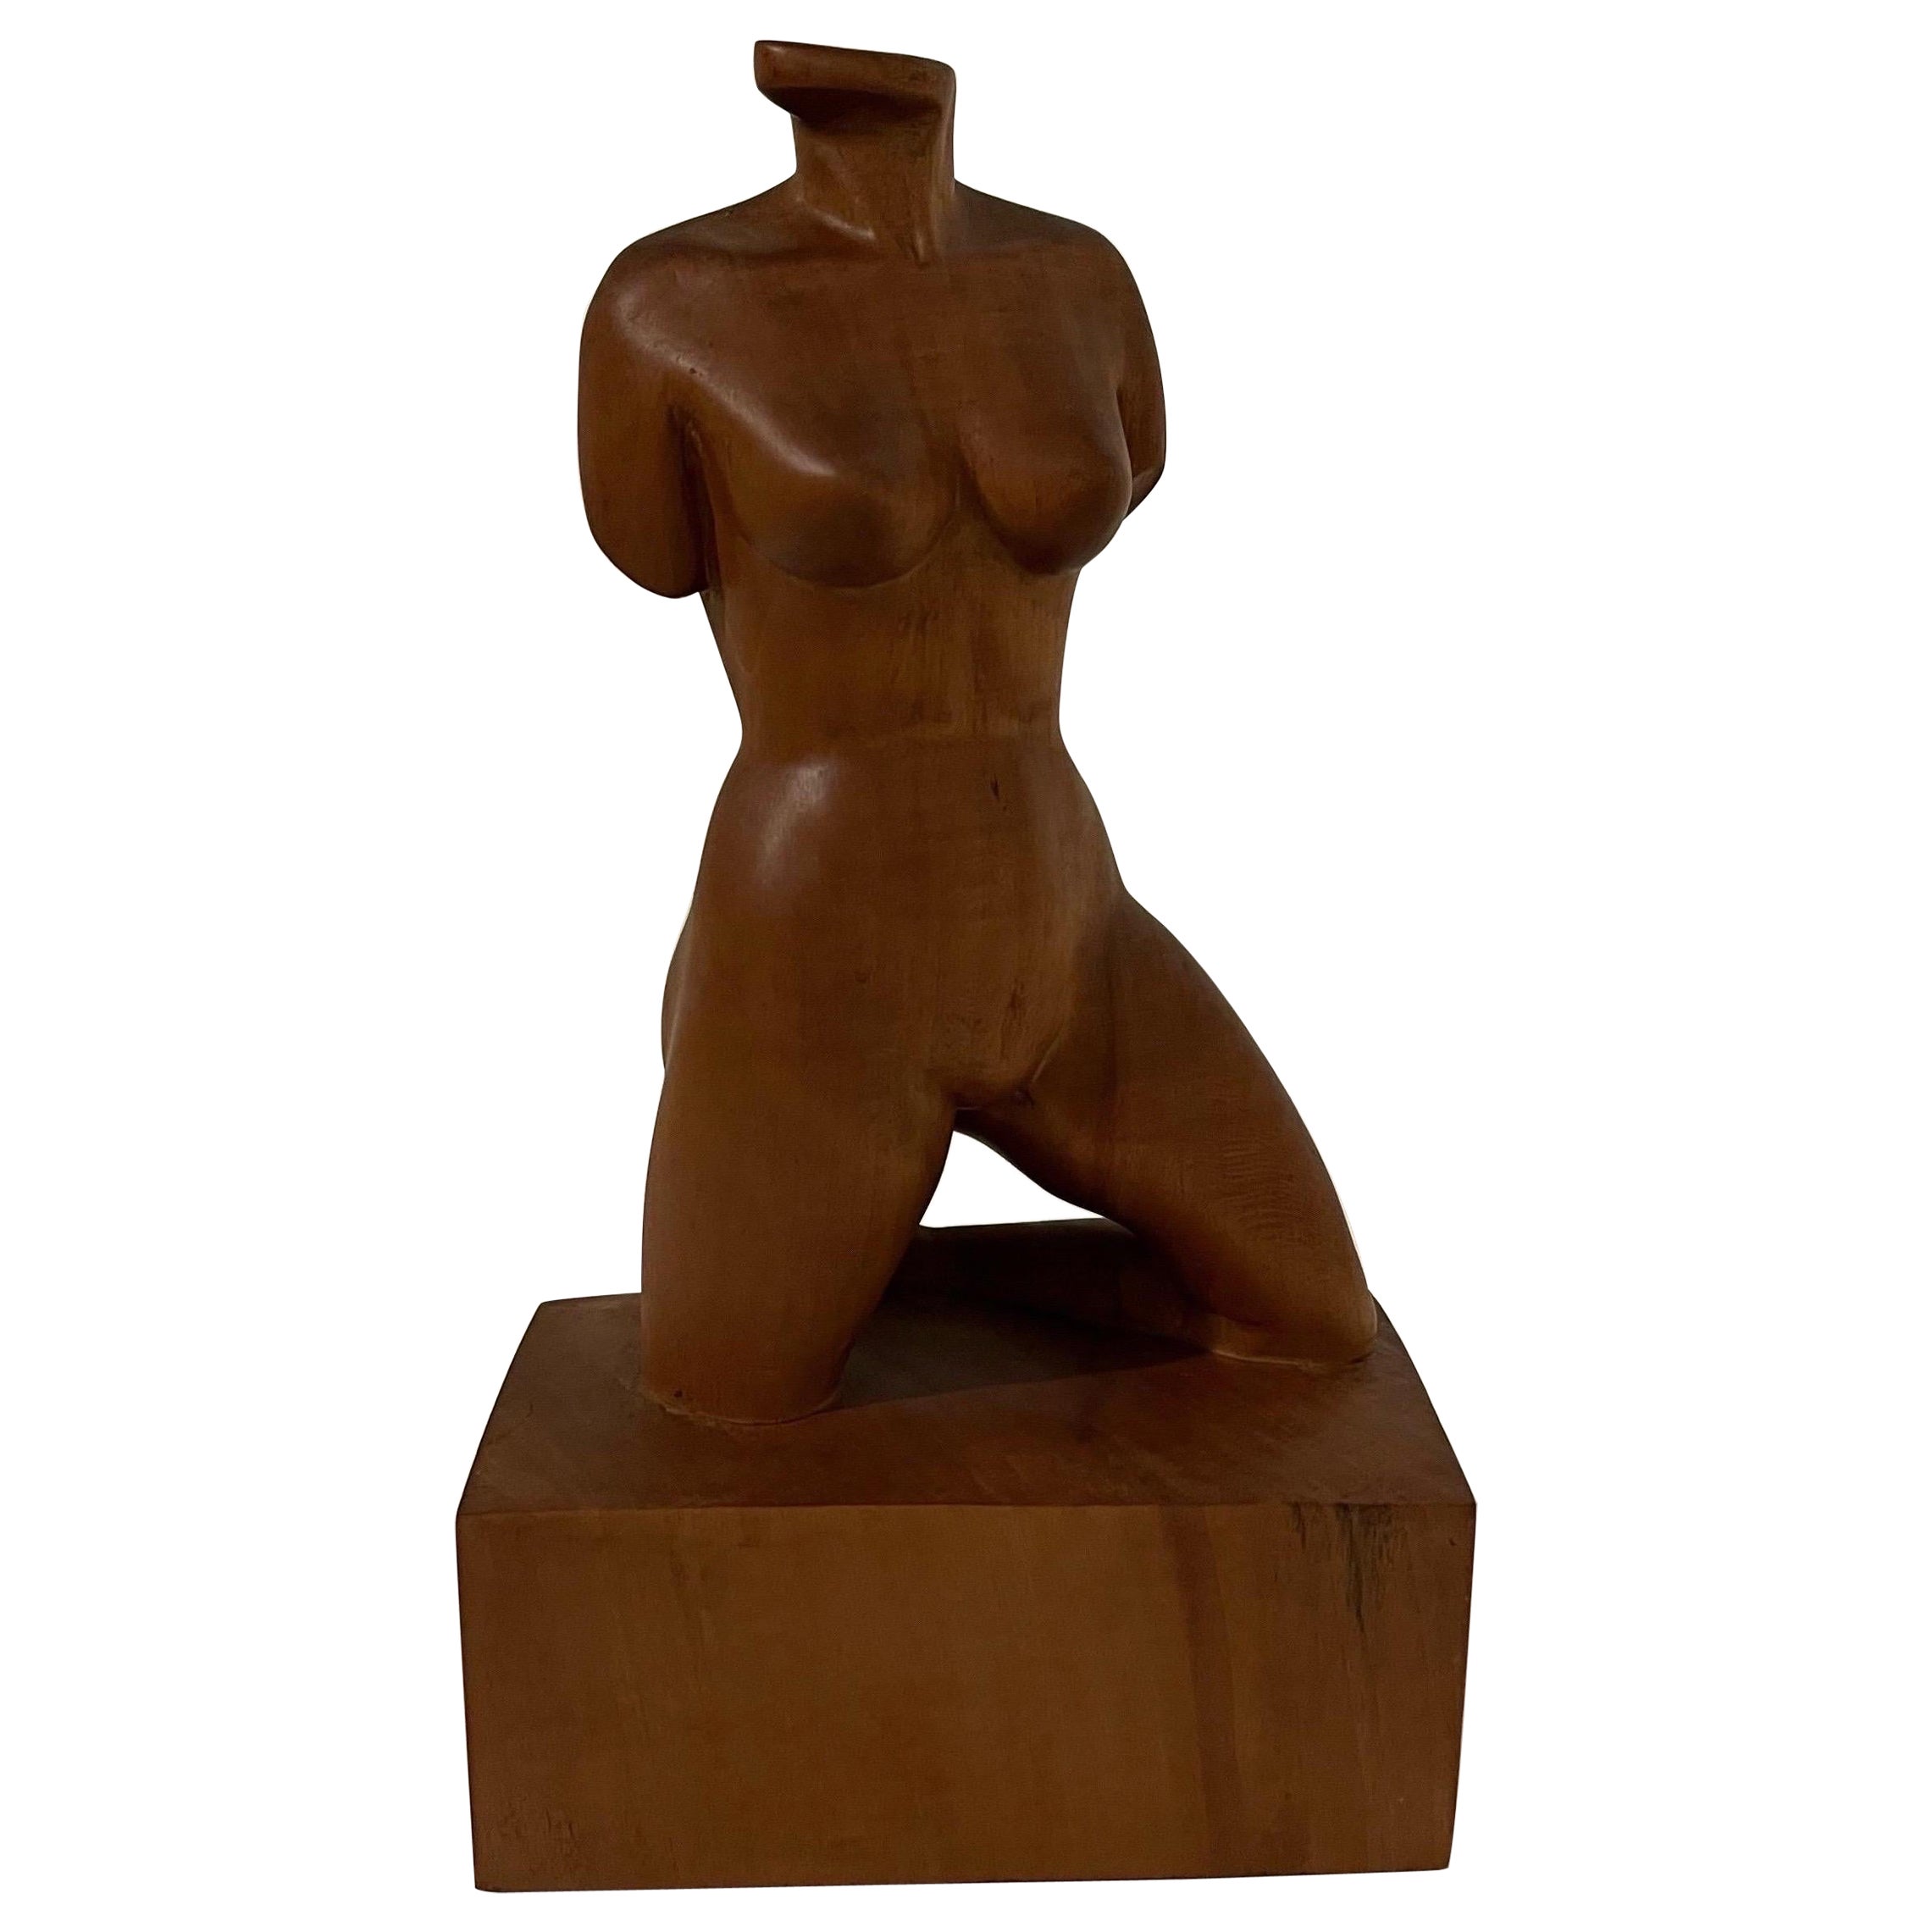 Skulptur einer weiblichen Aktfigur in Büste aus Holz, 1960er Jahre, Skulptur 